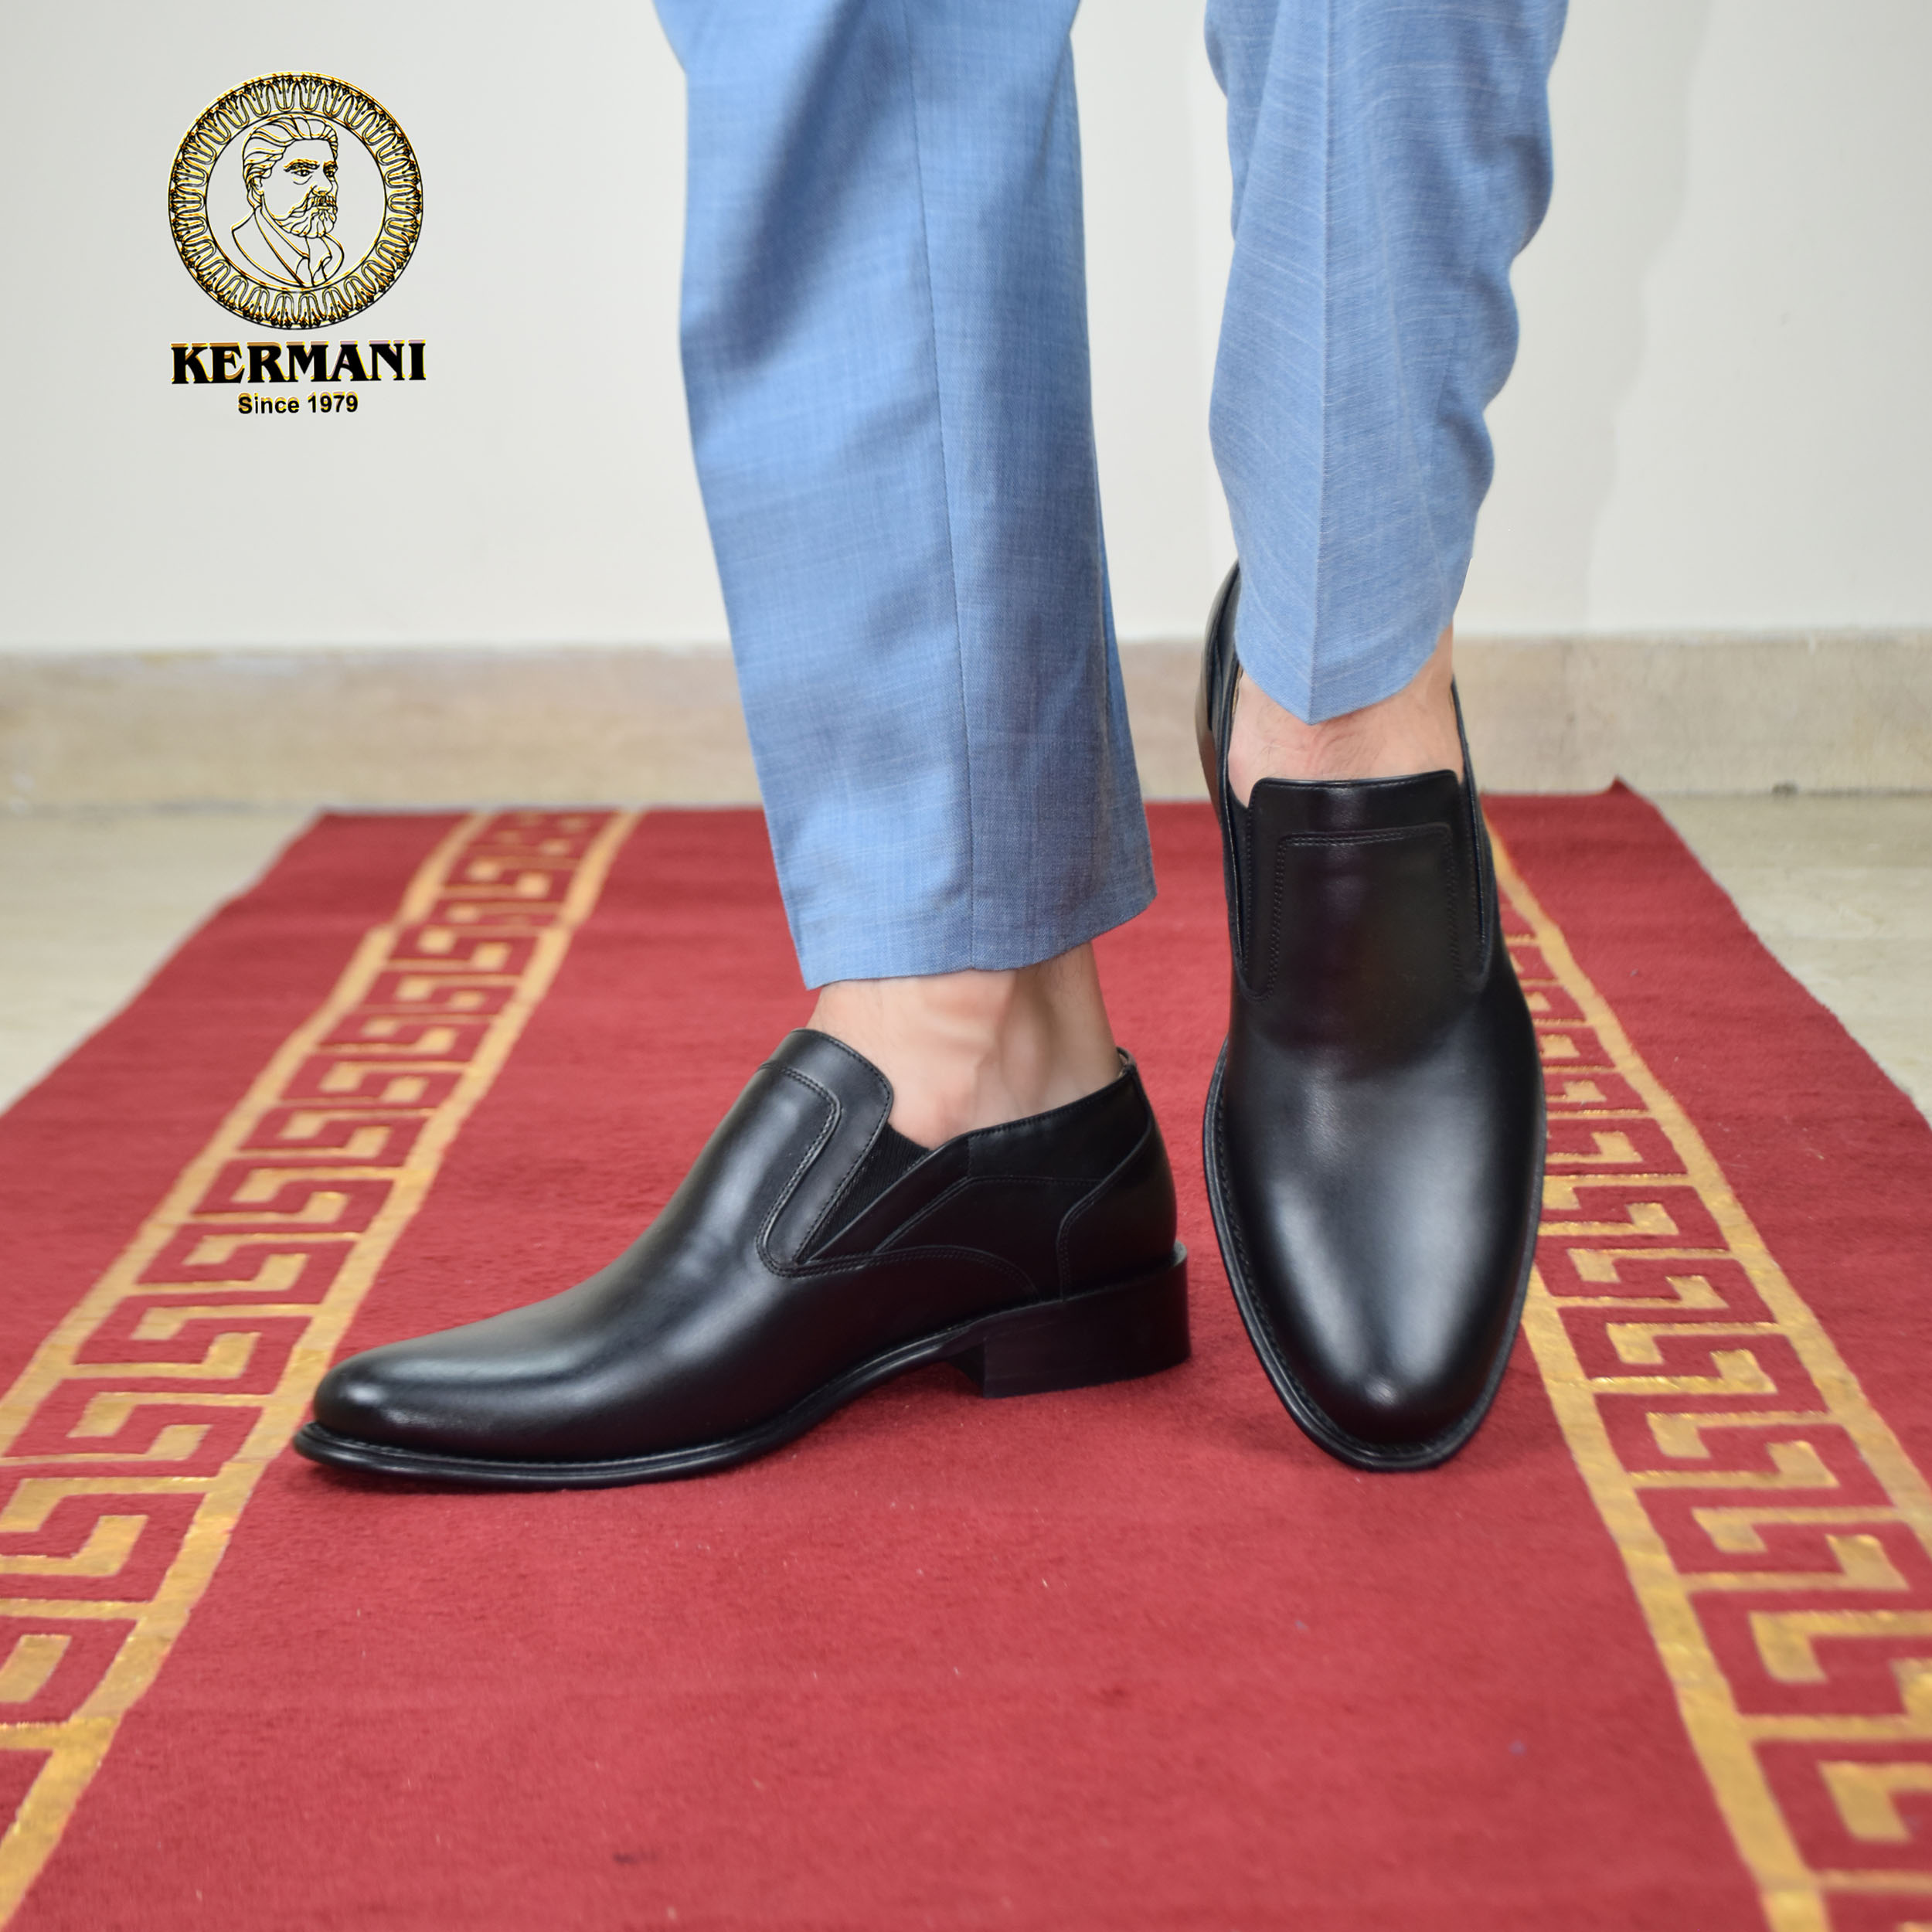 کفش مردانه کرمانی مدل چرم دستدوز طبیعی کد 350 رنگ مشکی -  - 7